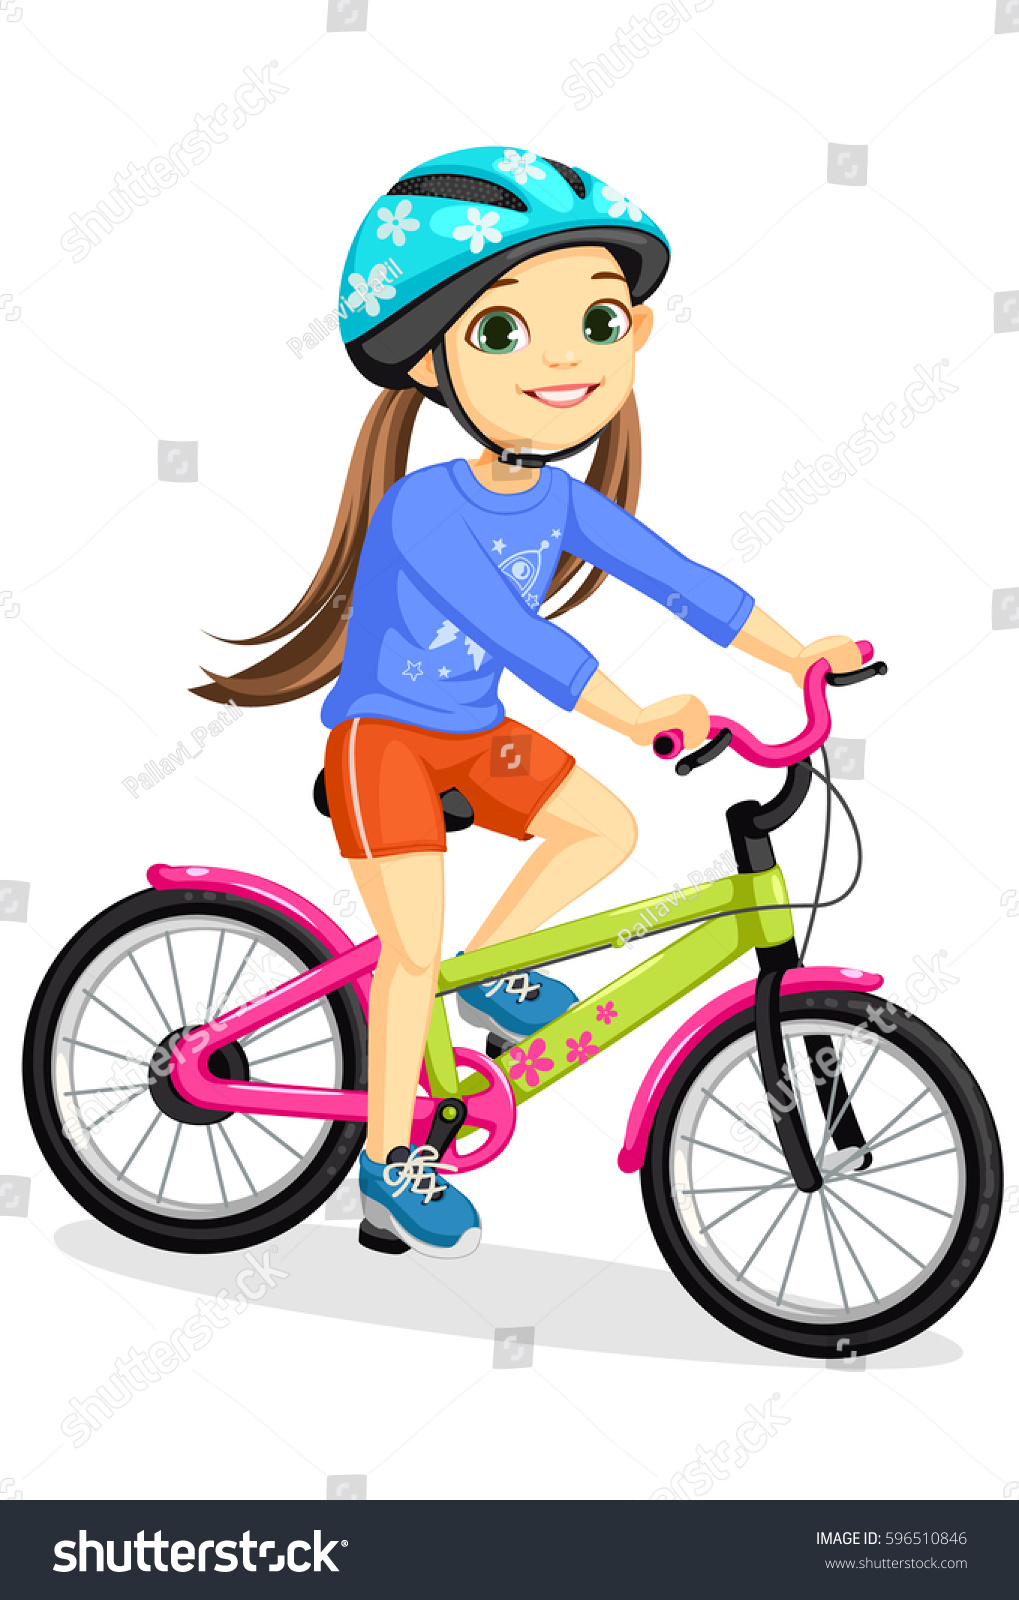 little girl cycle